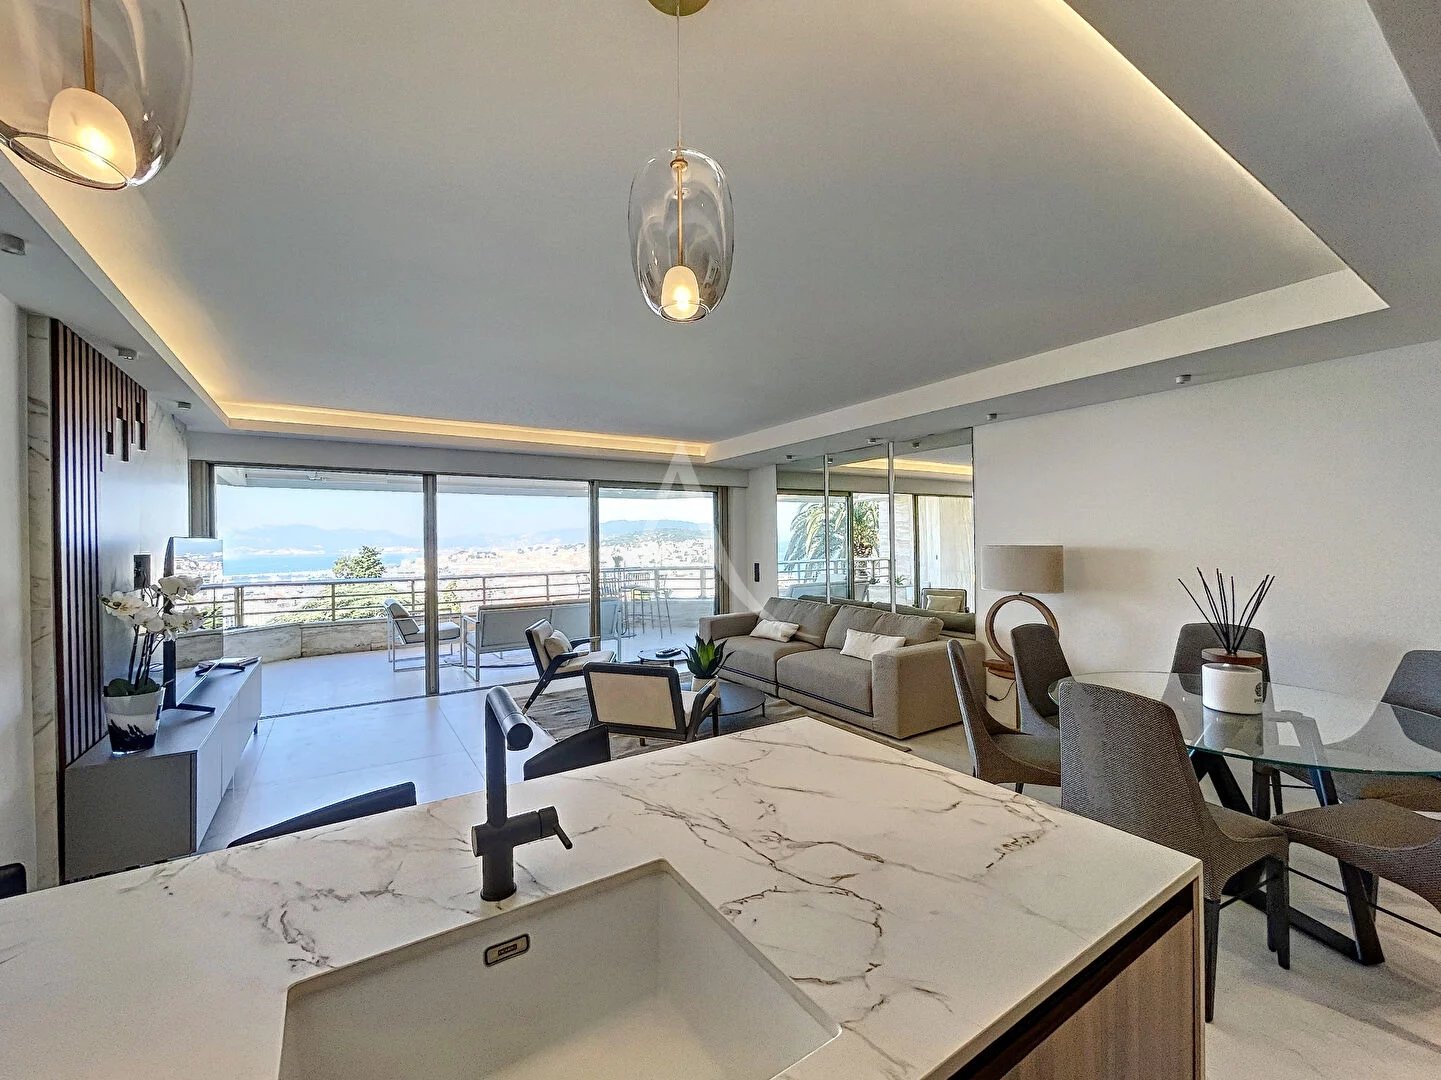 83042726-Cannes Californie - Appartement 4 pièces 92.20 m² d'exception - Vue mer - Gardien et piscine